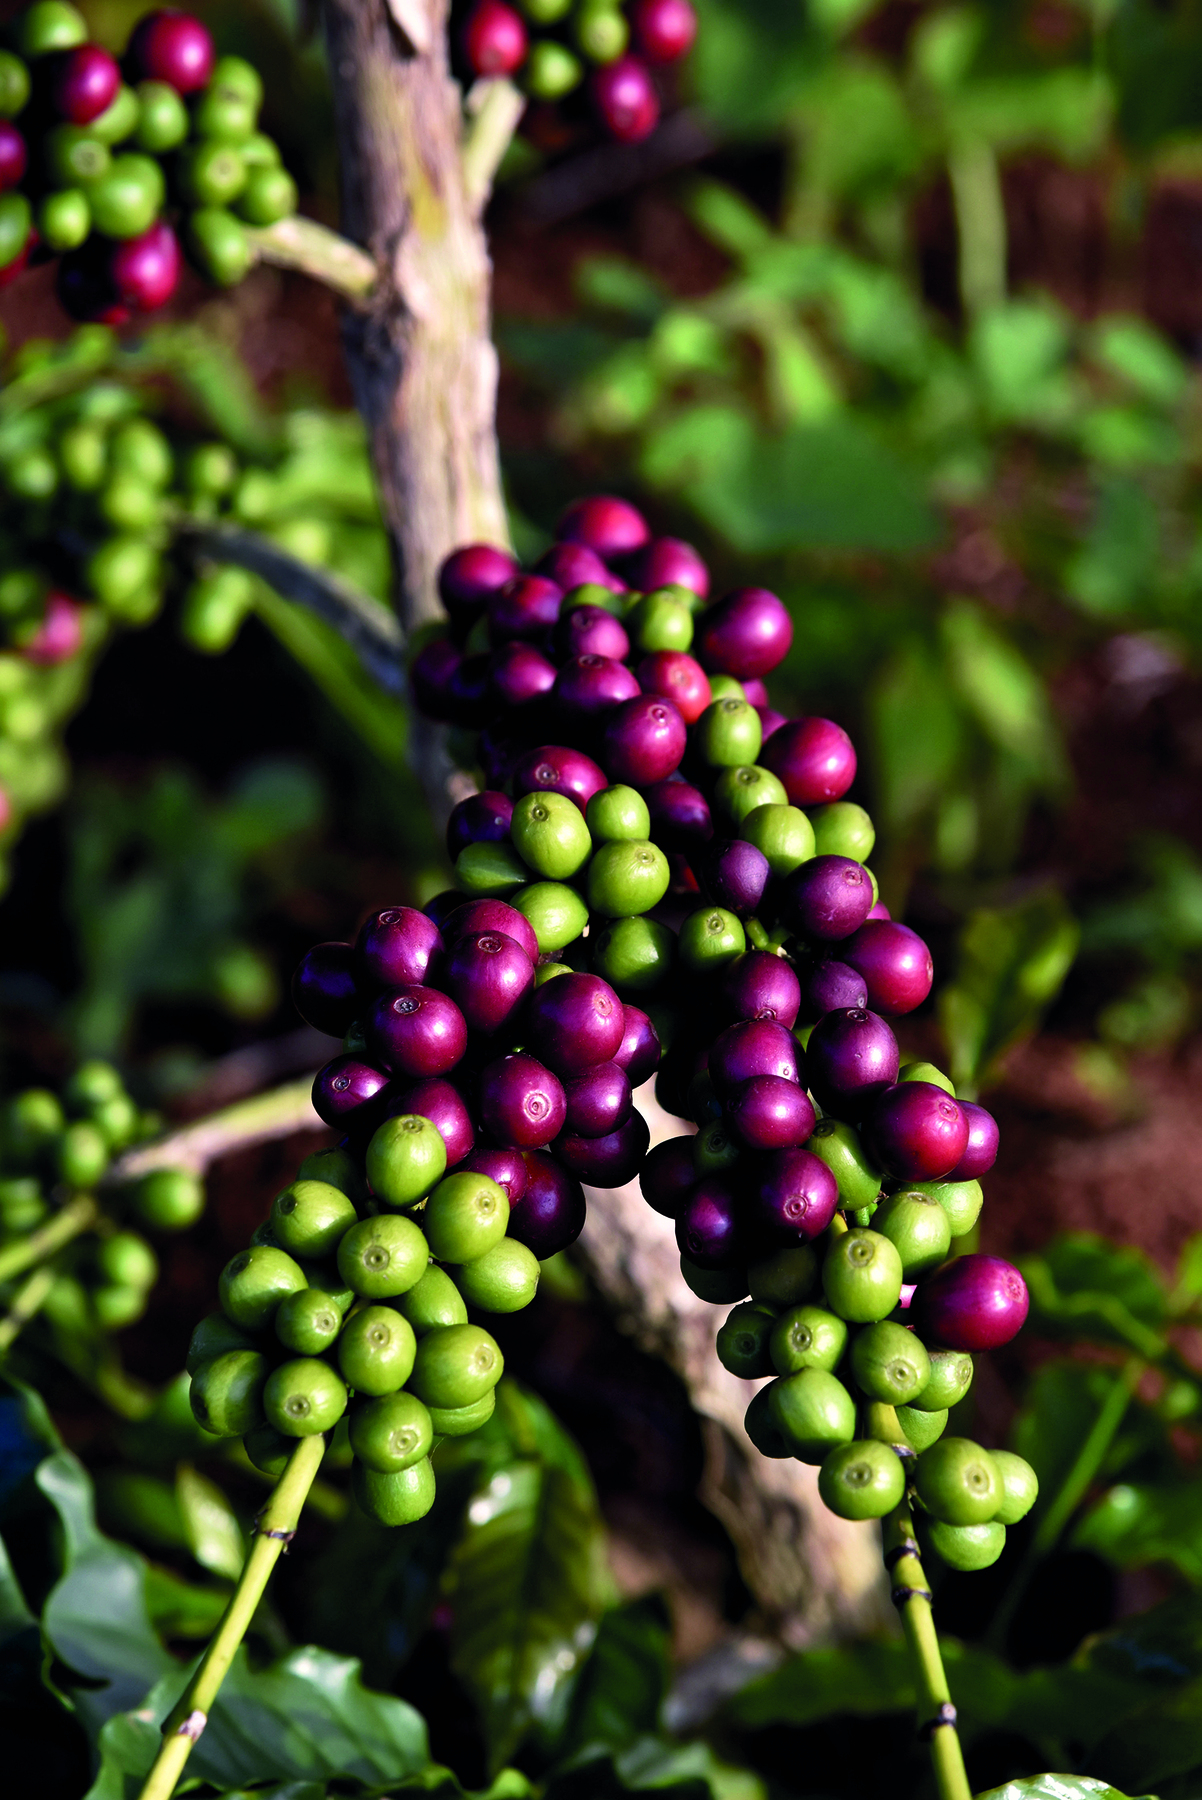 Fotografia. Sobre um fundo verde desfocado, um galho com frutos de café redondos, pequenos, verdes e outros vermelhos, mais maduros. Na parte inferior, os caules finos da planta em que estão presos os grãos.